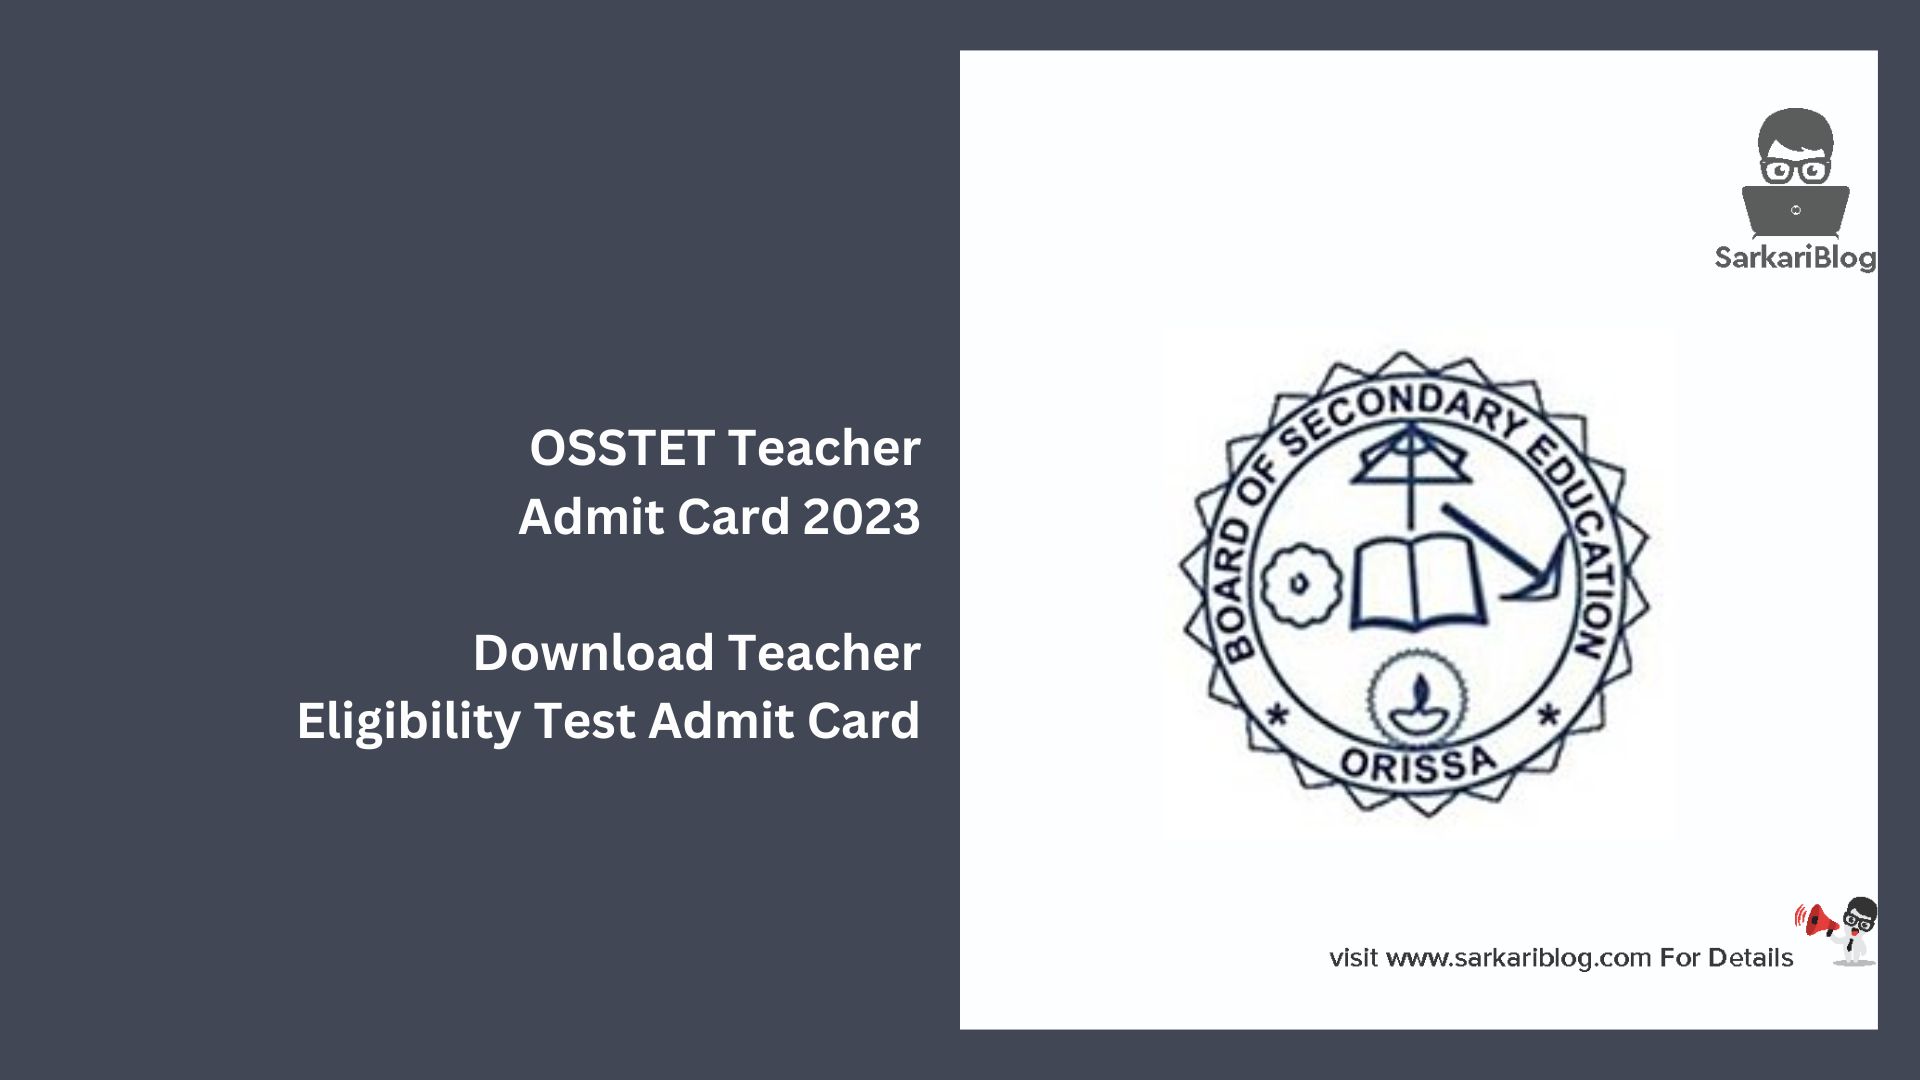 OSSTET Teacher Admit Card 2023